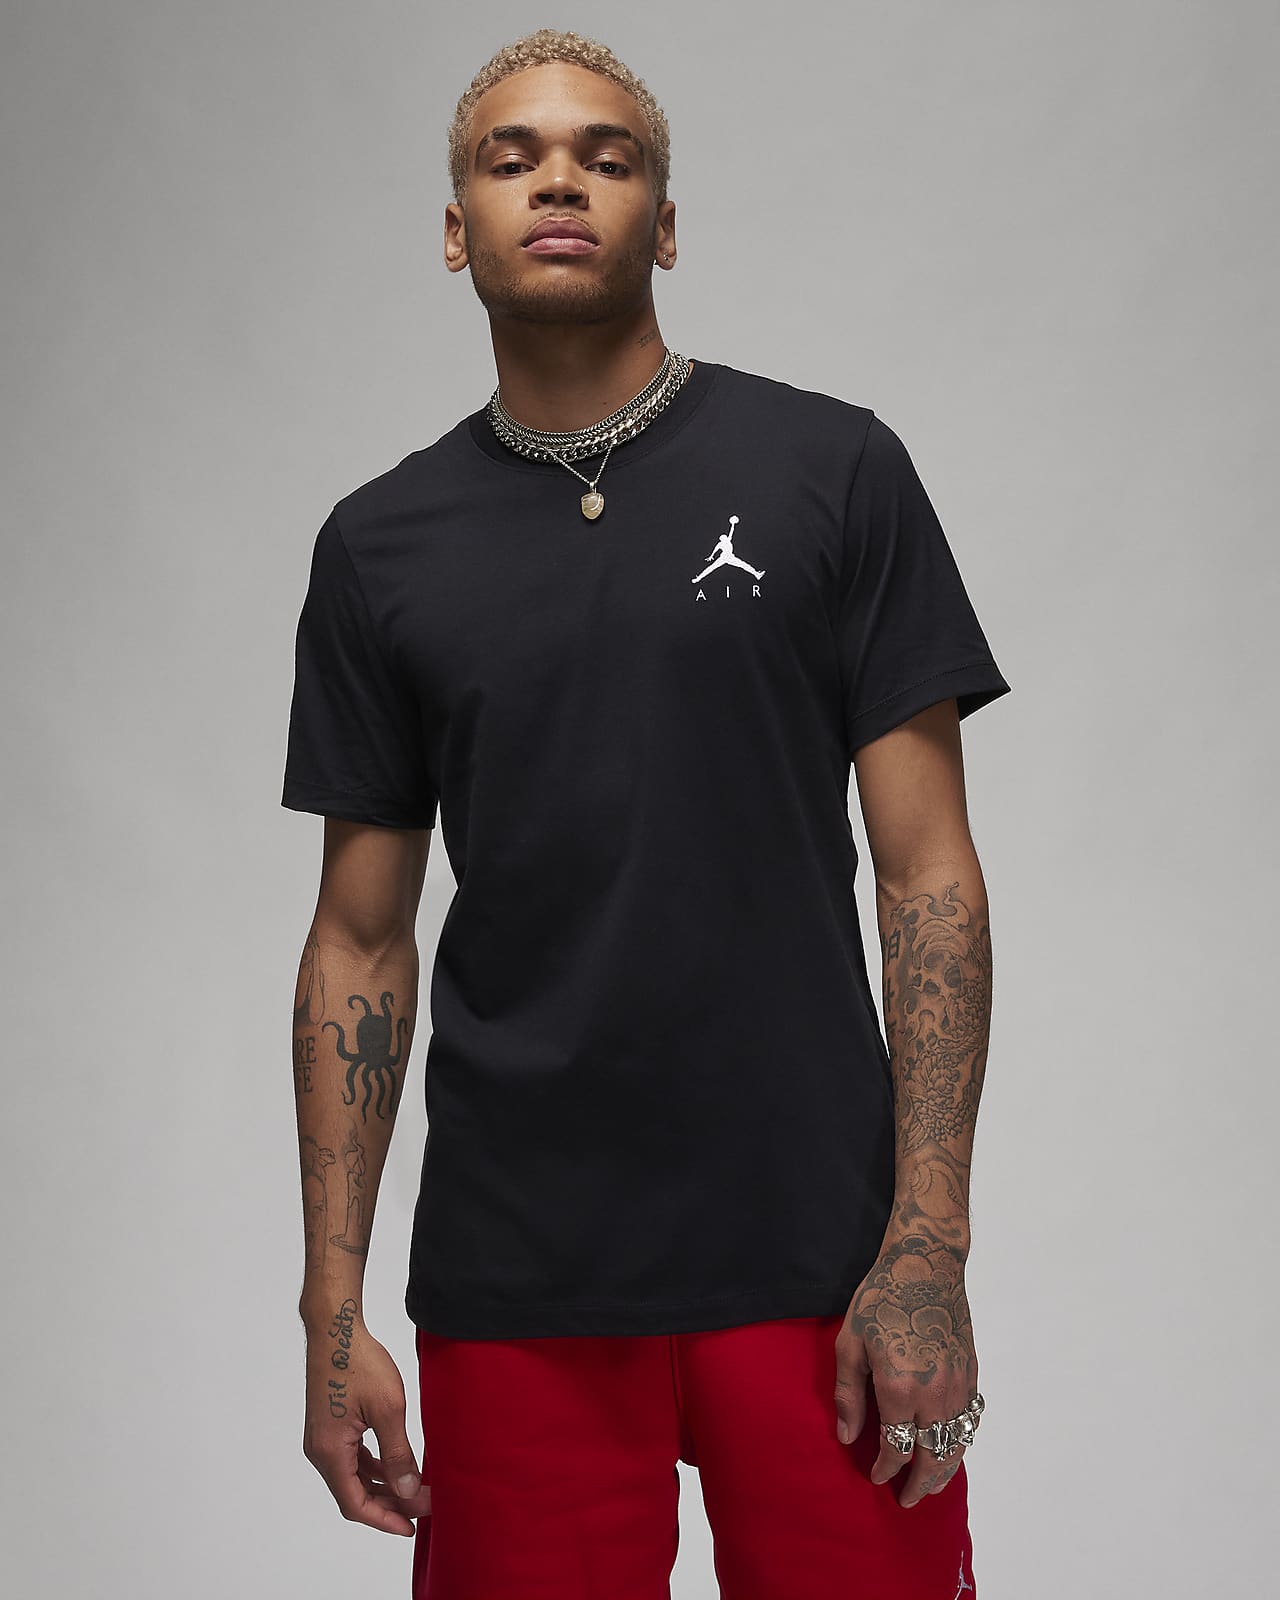 T-shirt Jordan Jumpman Air - Uomo. Nike IT